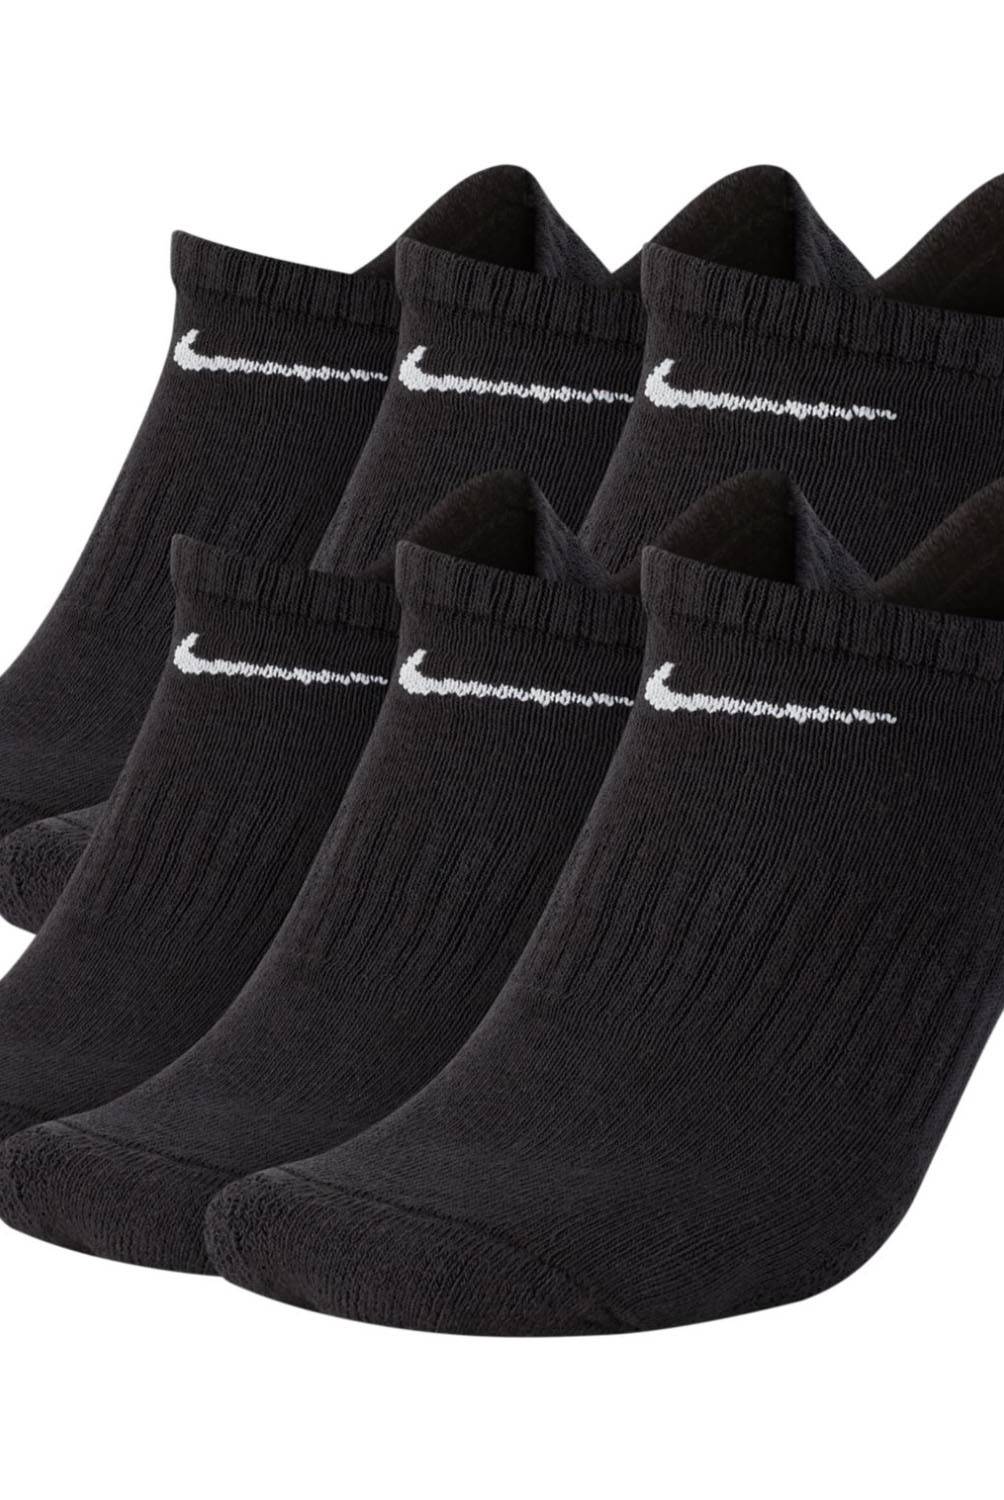 Las mejores ofertas en Calcetines Nike No-Show Calcetines para